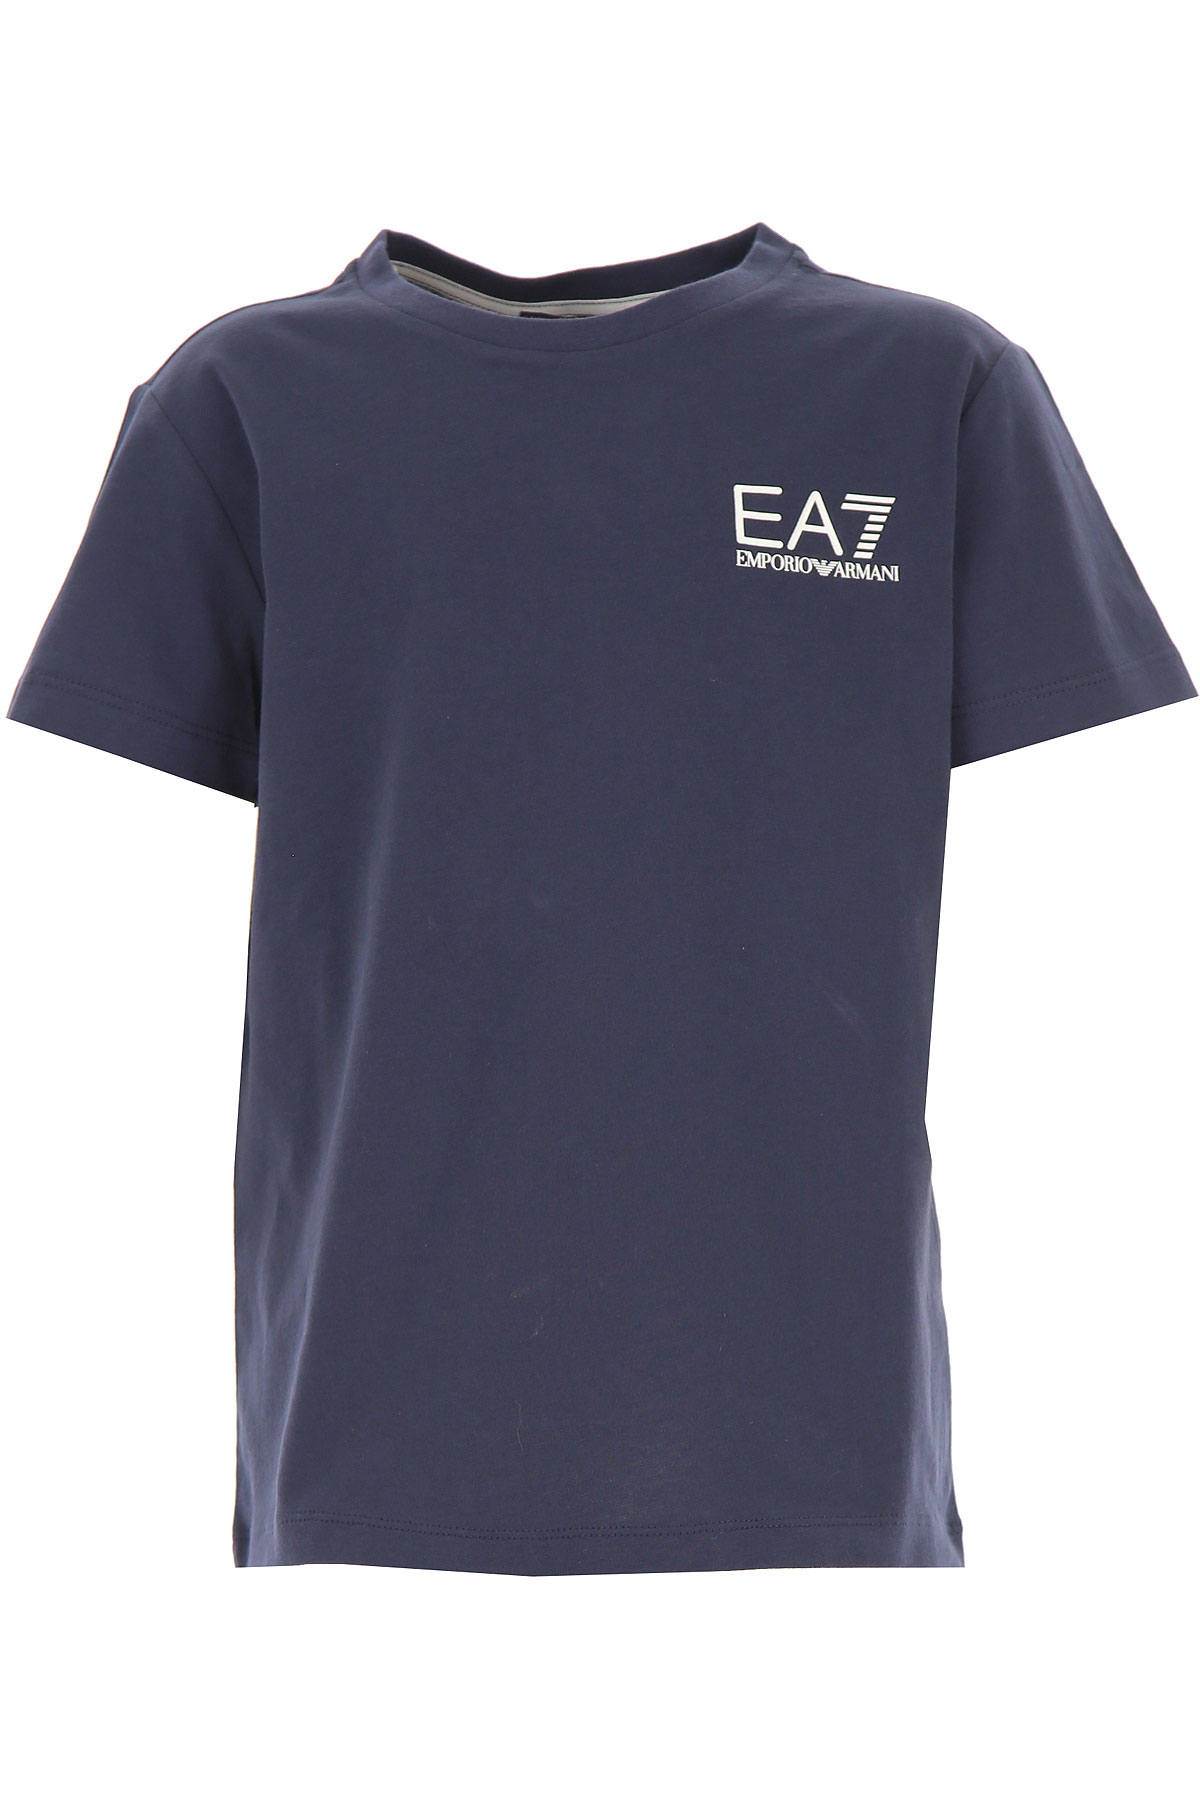 Emporio Armani Kinder T-Shirt für Jungen Günstig im Outlet Sale, Marine blau, Baumwolle, 2017, 10Y 6Y 8Y